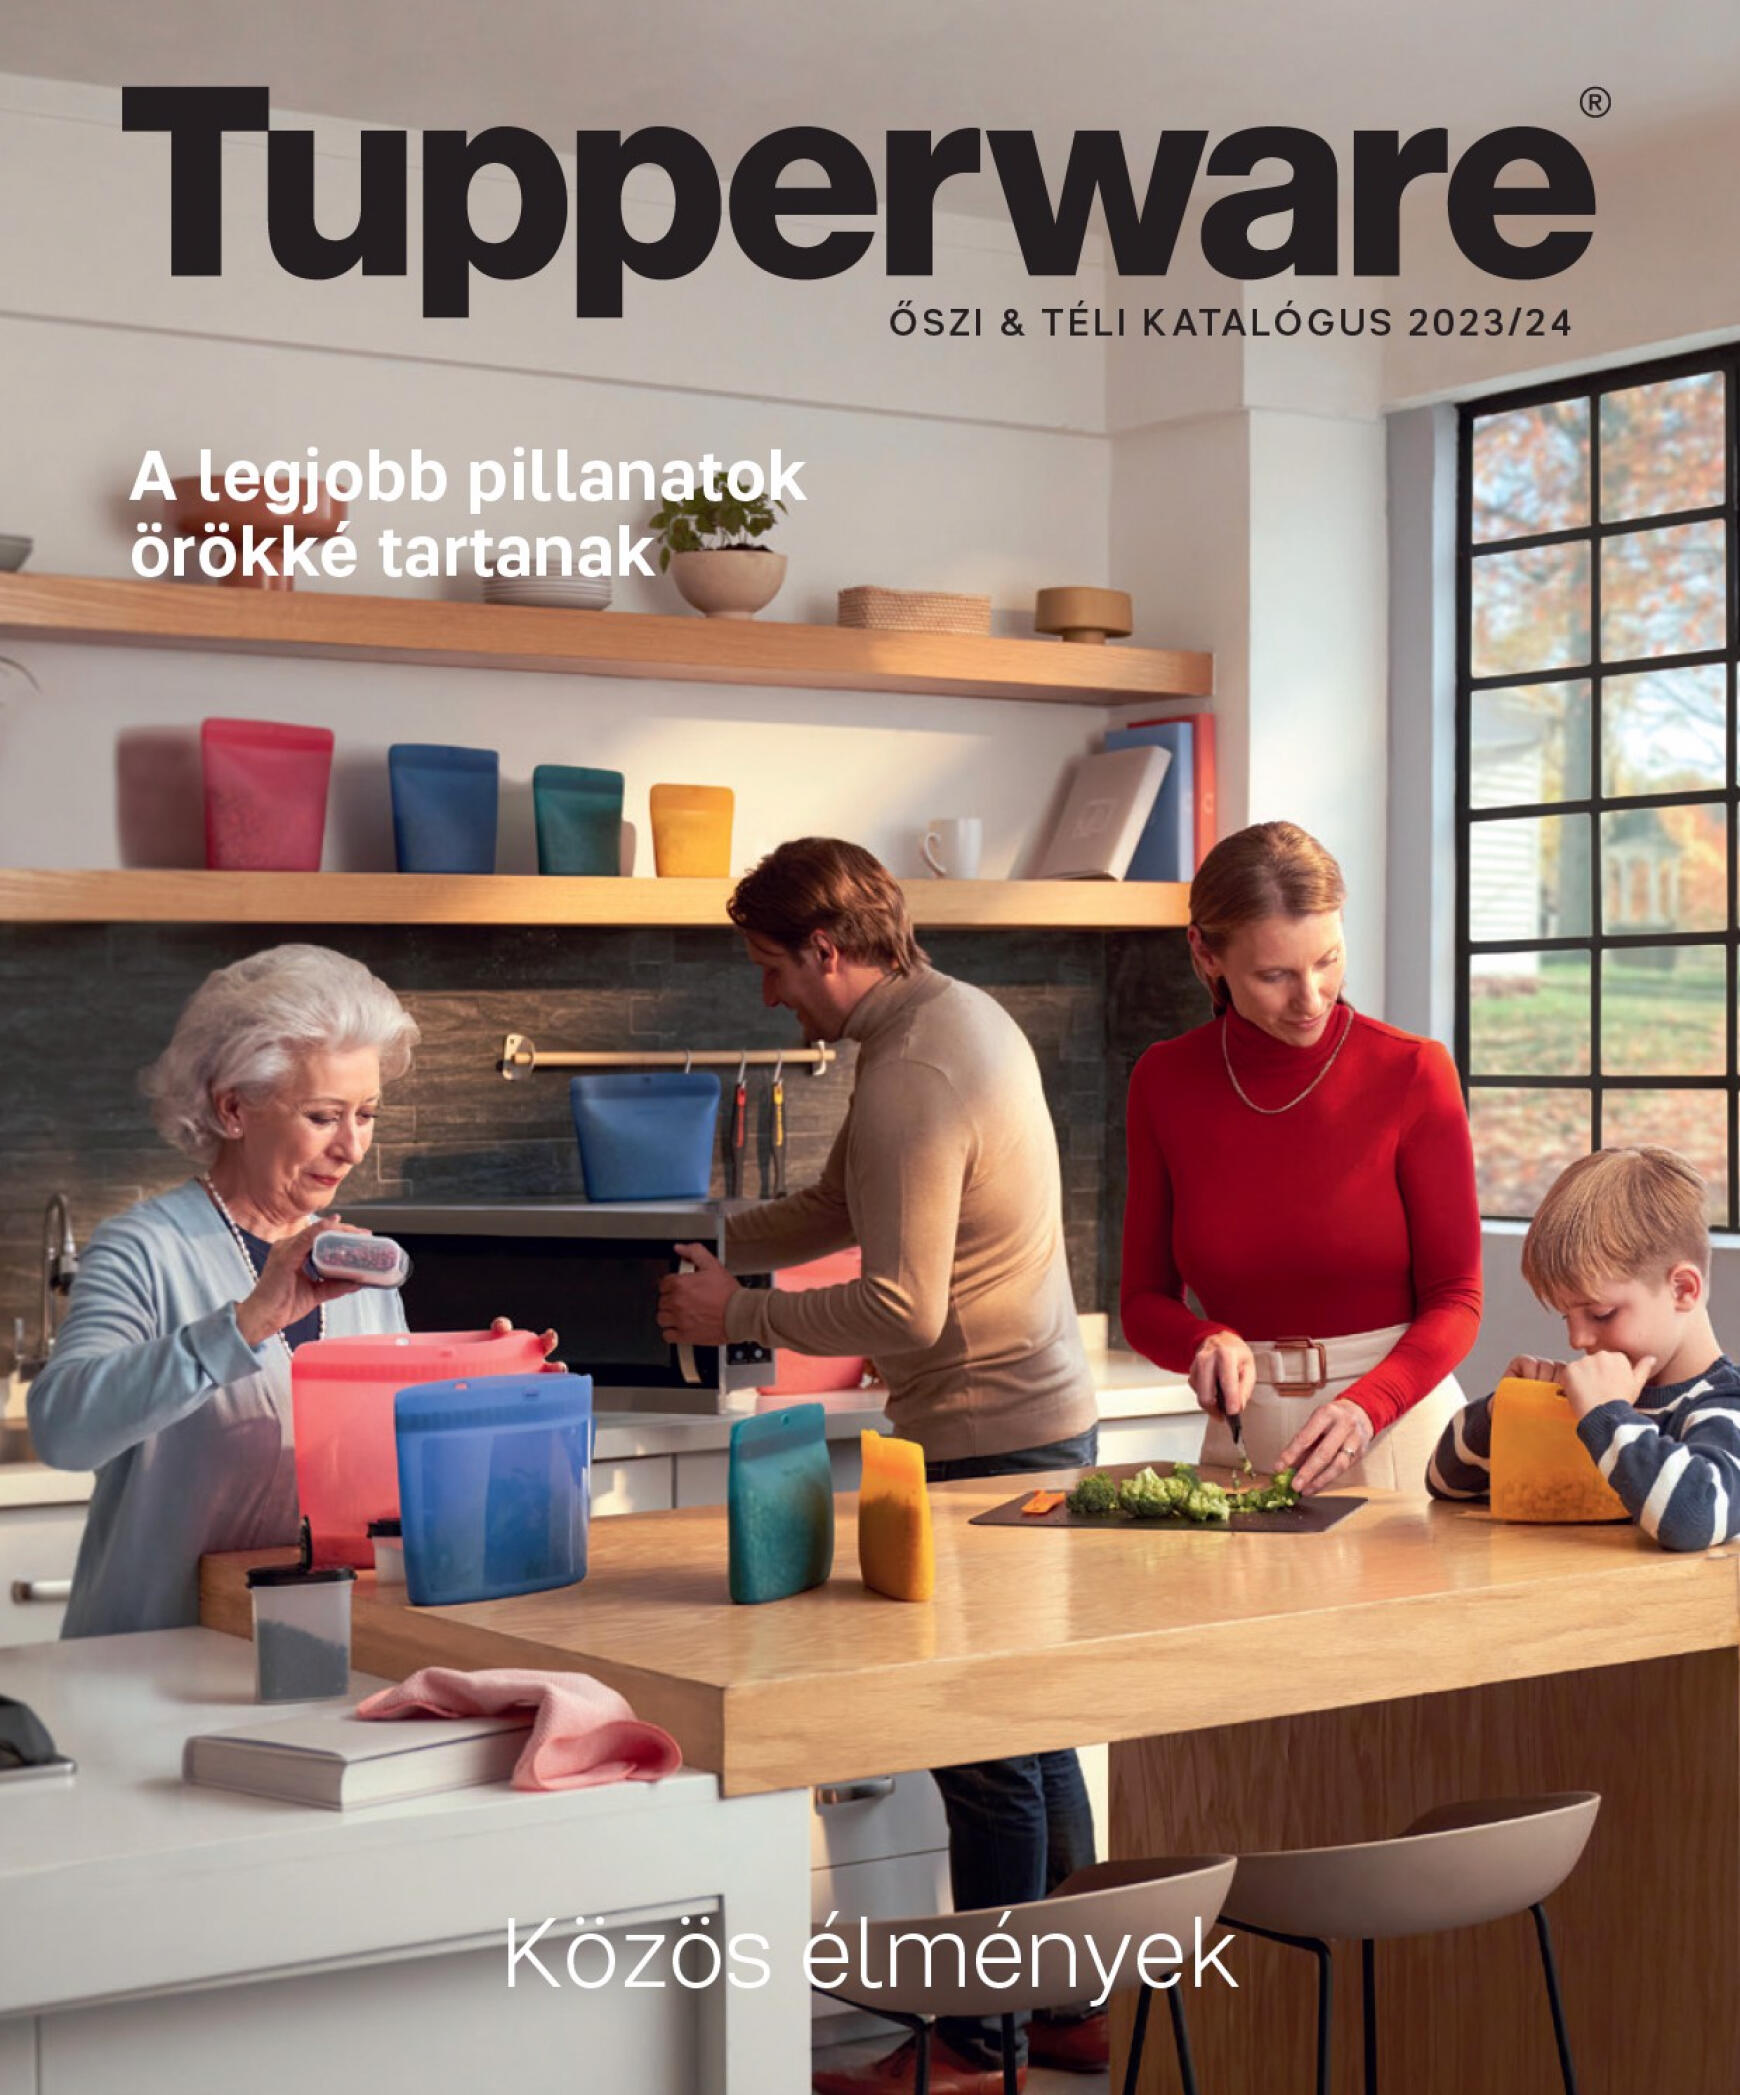 tupperware - Tupperware - ŐSZI & TÉLI KATALÓGUS 2023/24 dátumtól érvényes 2023.11.27. - page: 1